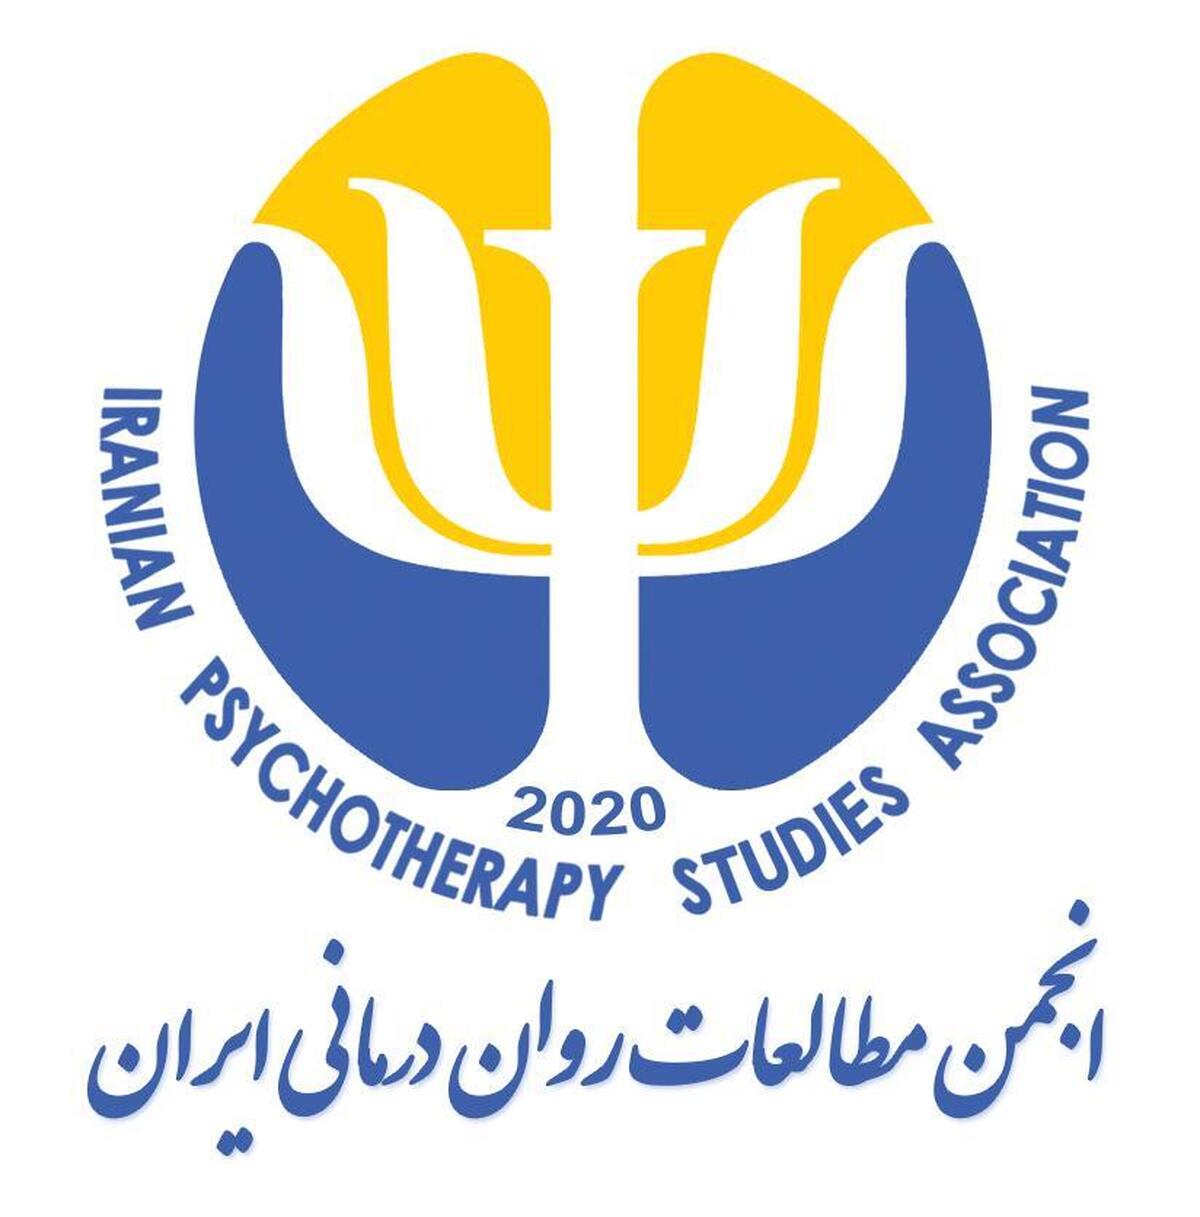 انتصاب در انجمن مطالعات روان درمانی استان مرکزی